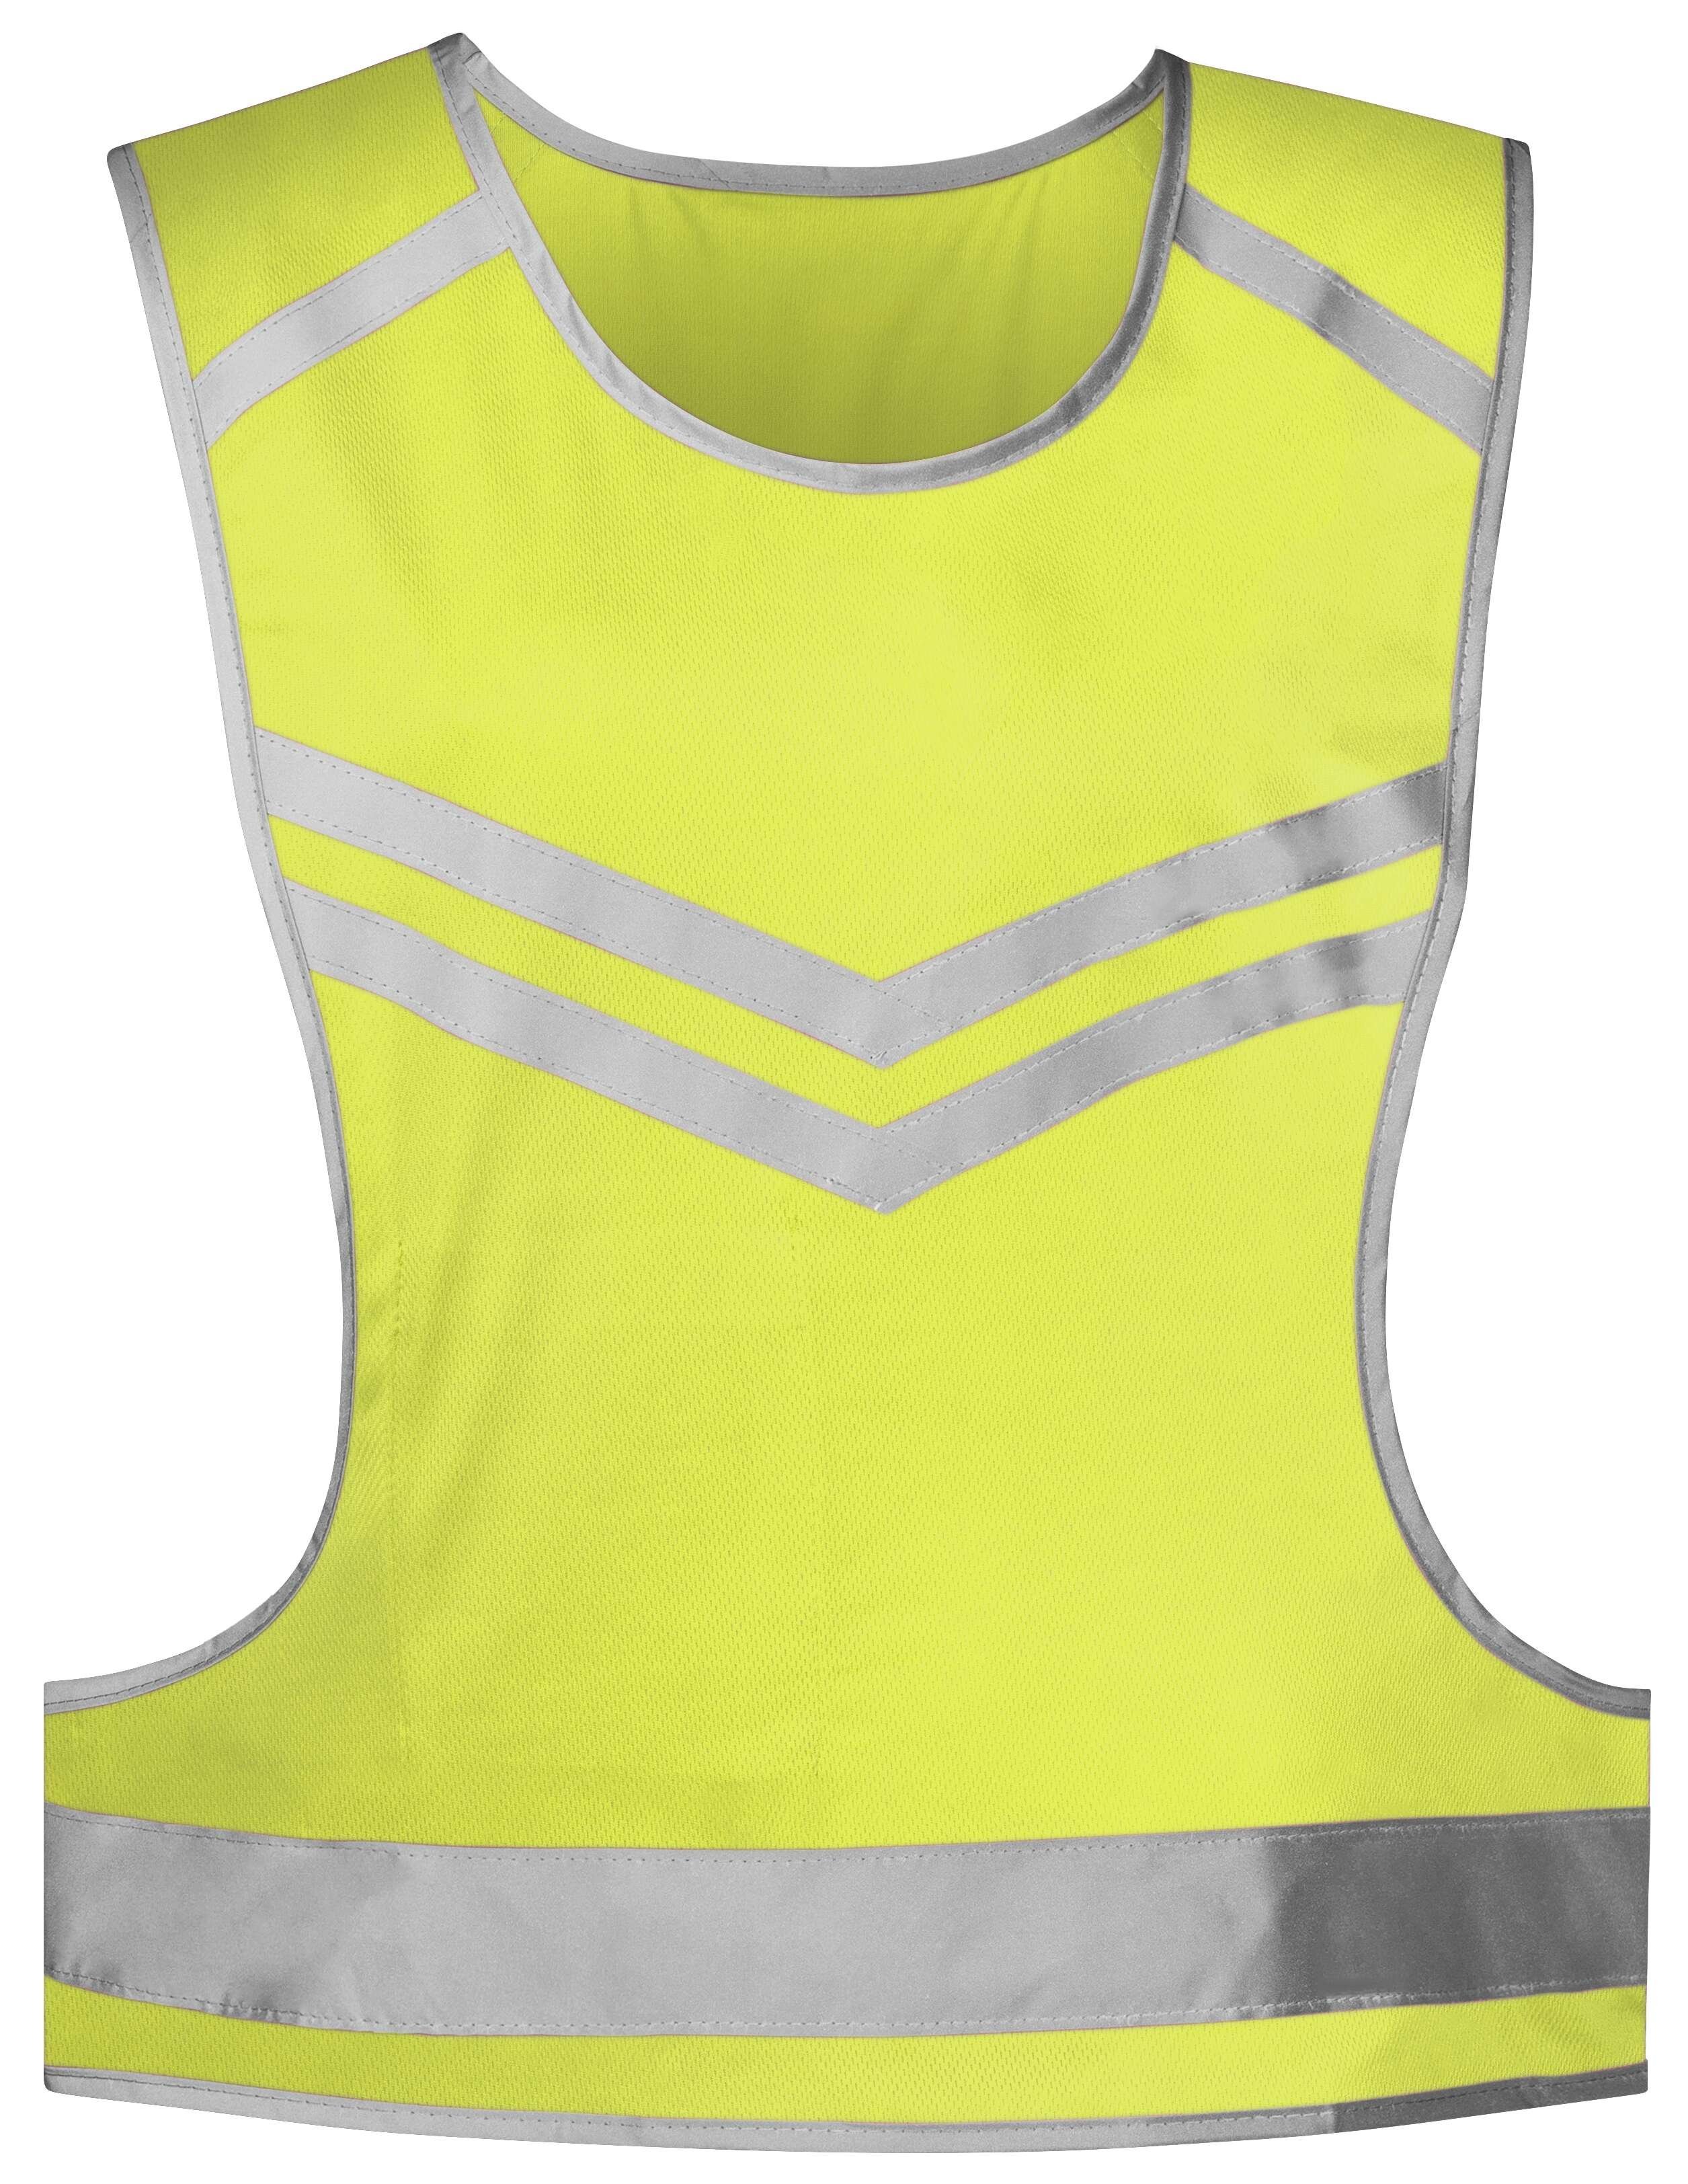 Vrijetijdsvest groen, unisex reflecterend vest, hardloopvest, fluorescerend vest maat L/XL